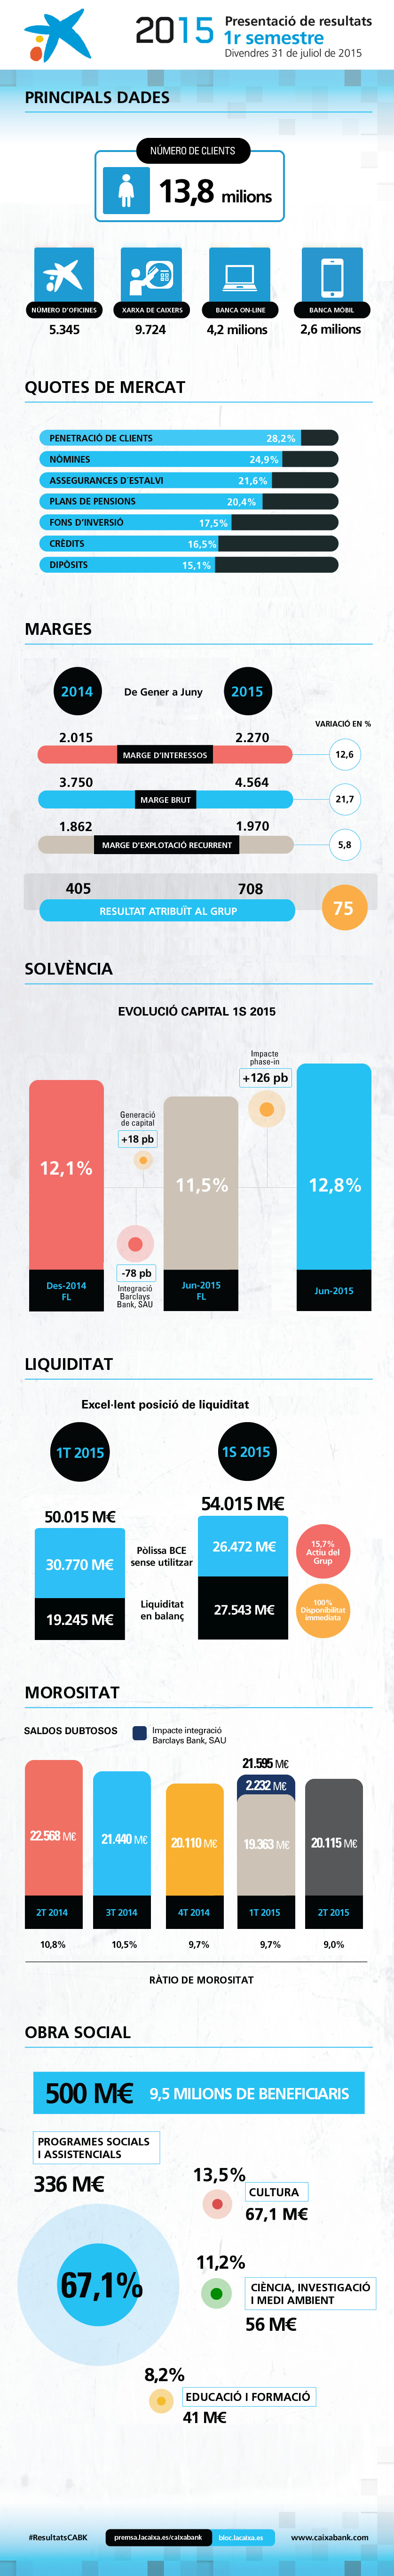 Principals dades de la presentació de resultats 1S 2015 de CaixaBank